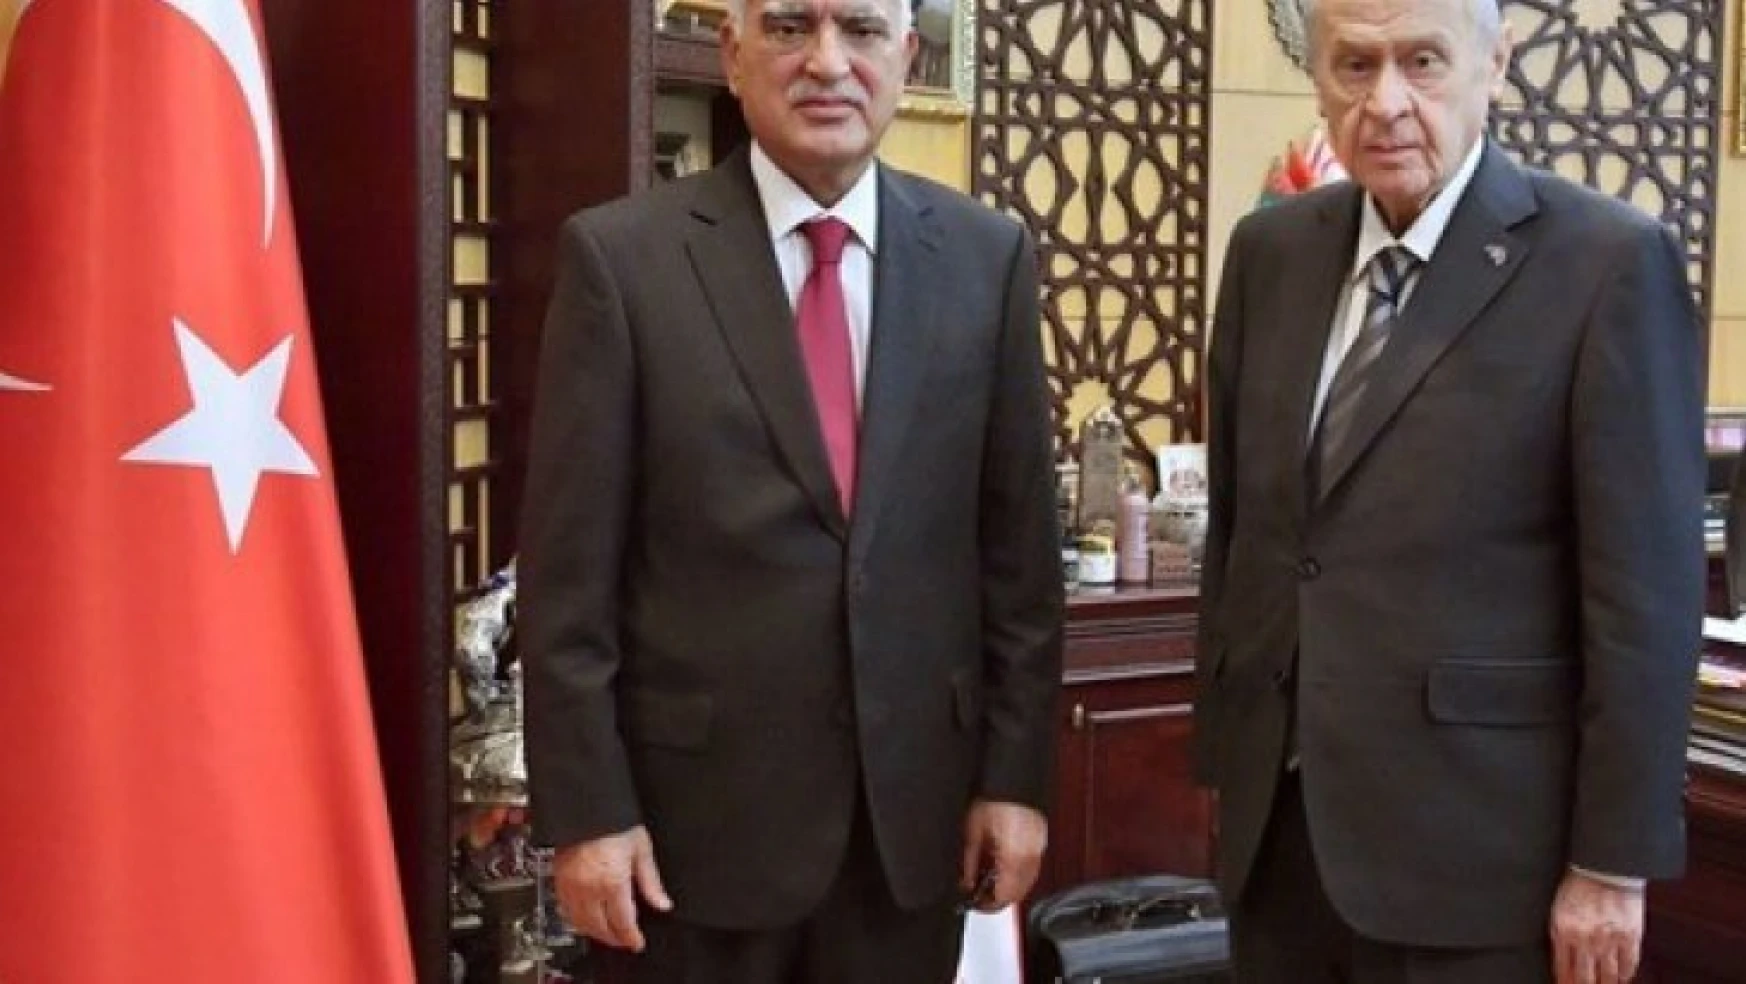 MHP lideri Bahçeli ile Türkmeneli Partisi Genel Başkanı Sarıkahya görüştü